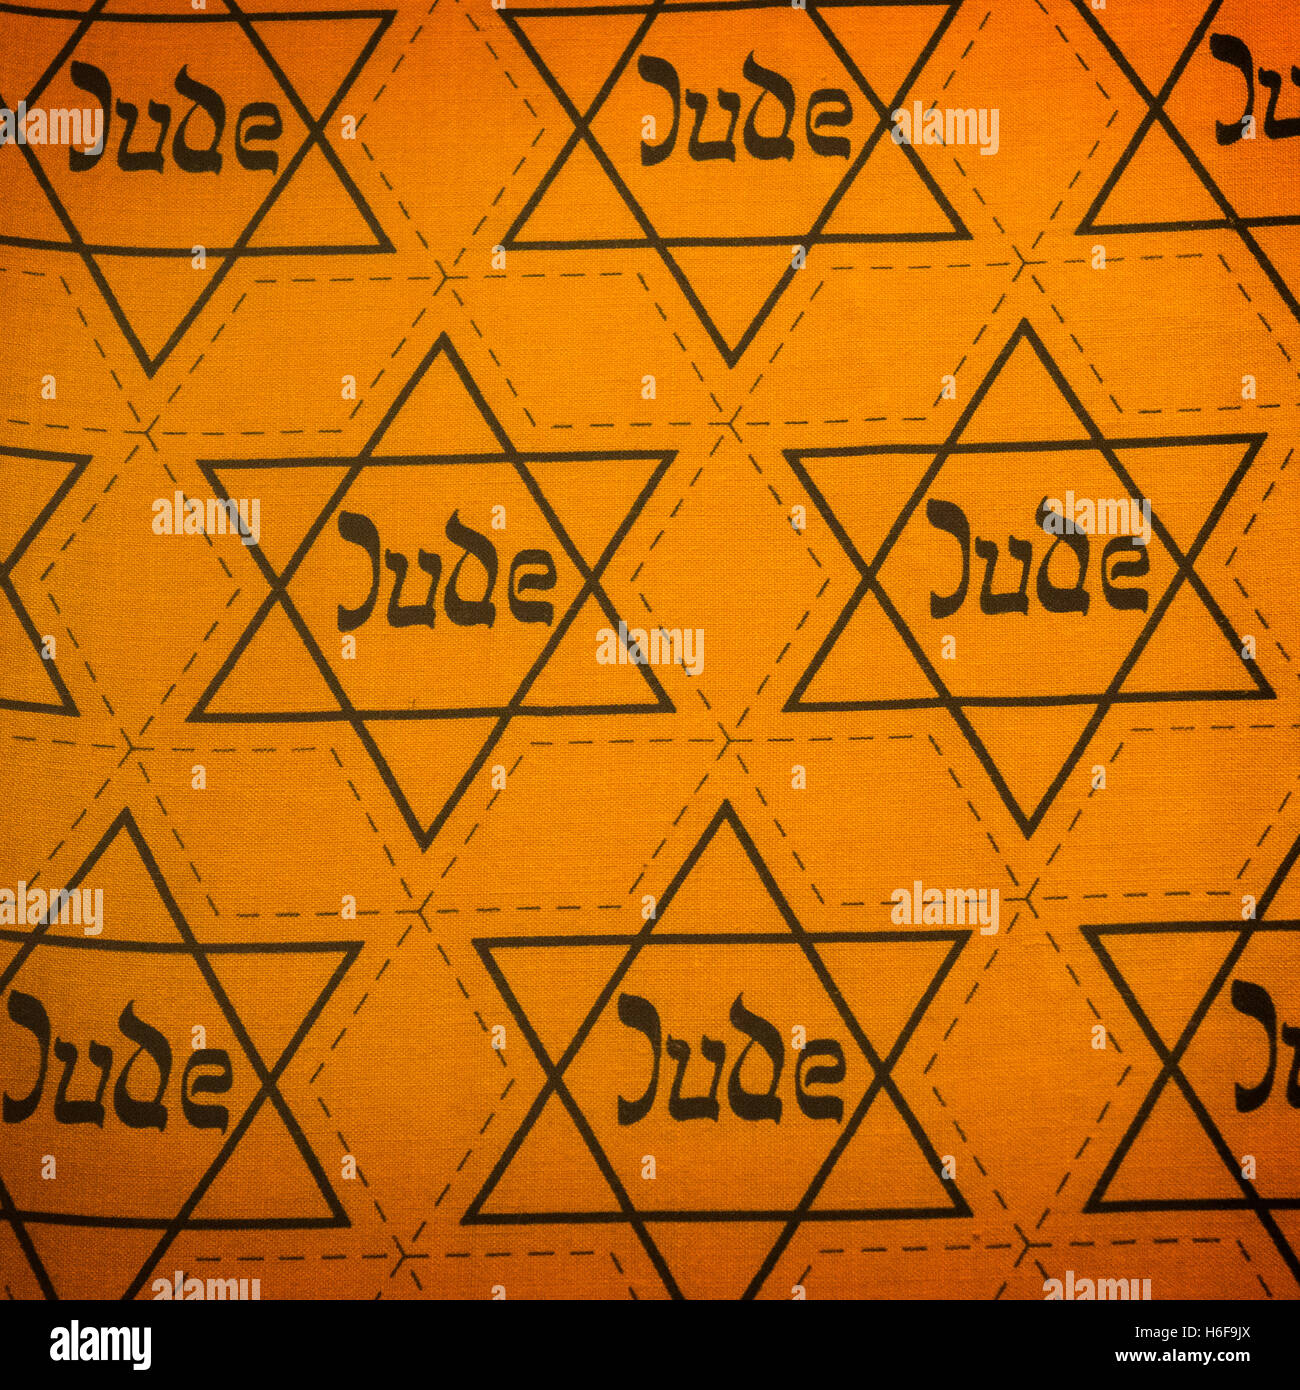 Feuille de tissu jaune étoile juive avec 'Jude' inscription qui les Nazis ont obligé les Juifs à porter Musée Juif de Berlin Allemagne Banque D'Images